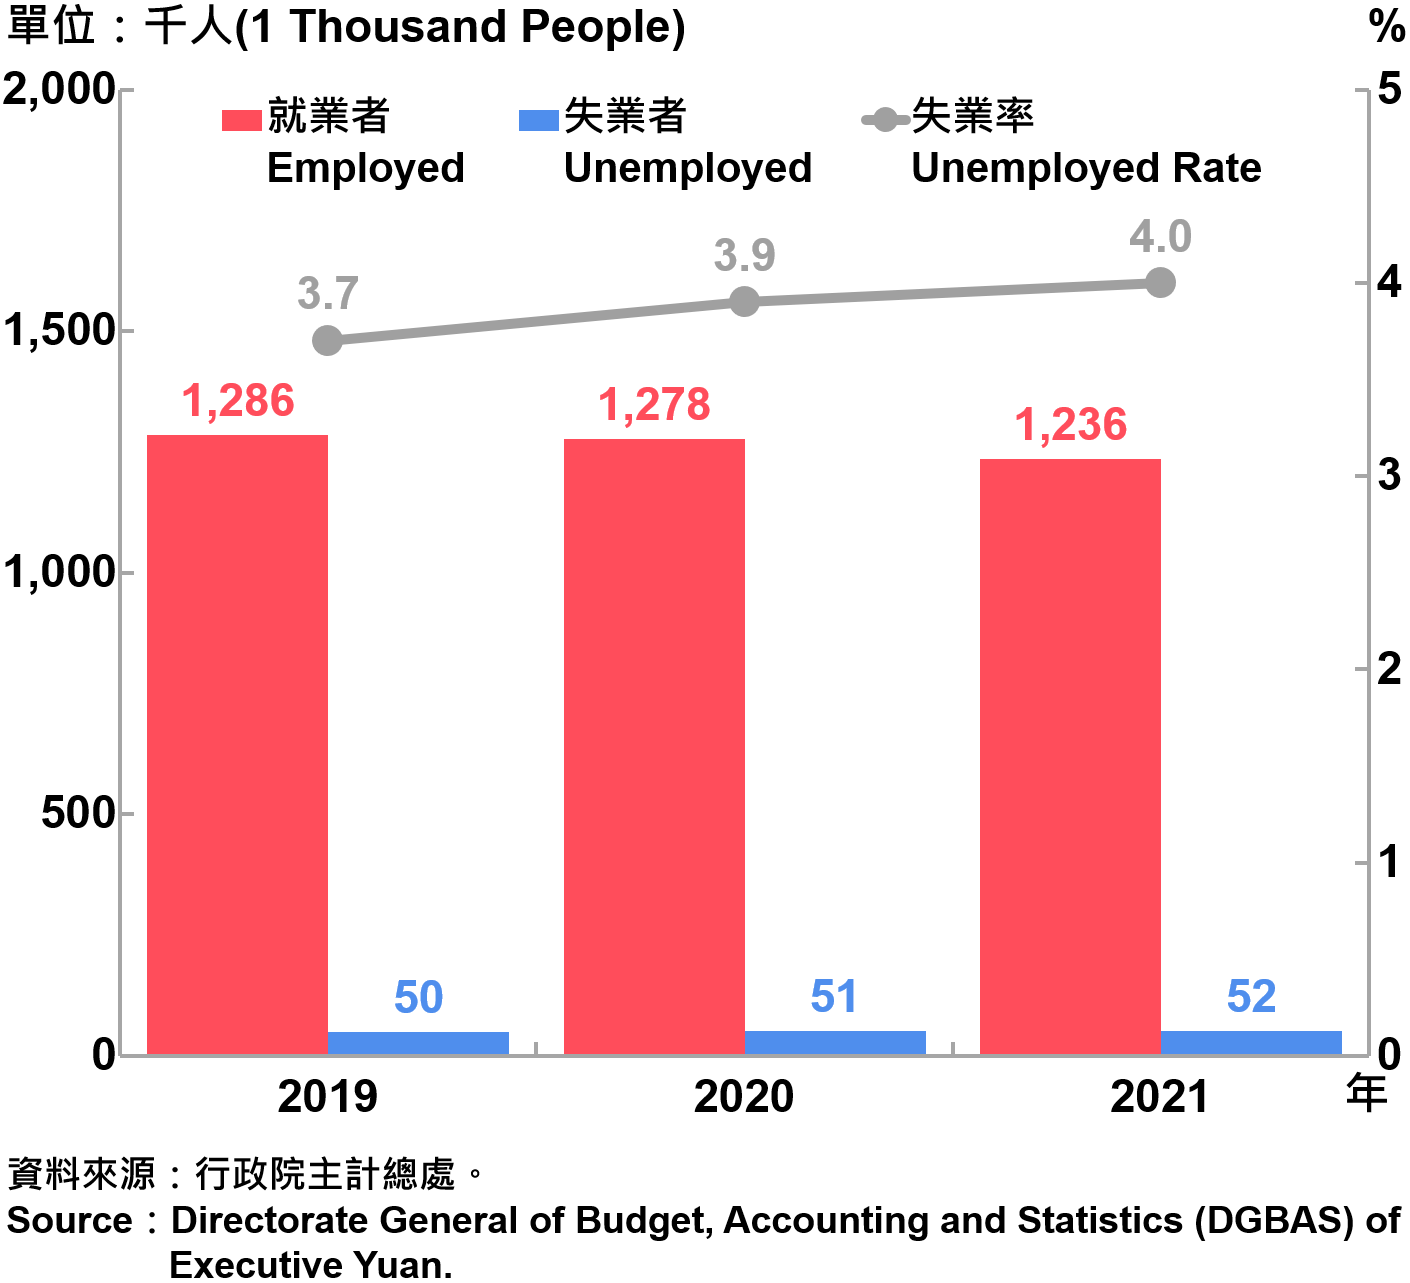 臺北市勞動力人數統計—2021 Labor Force Statistics in Taipei City—2021